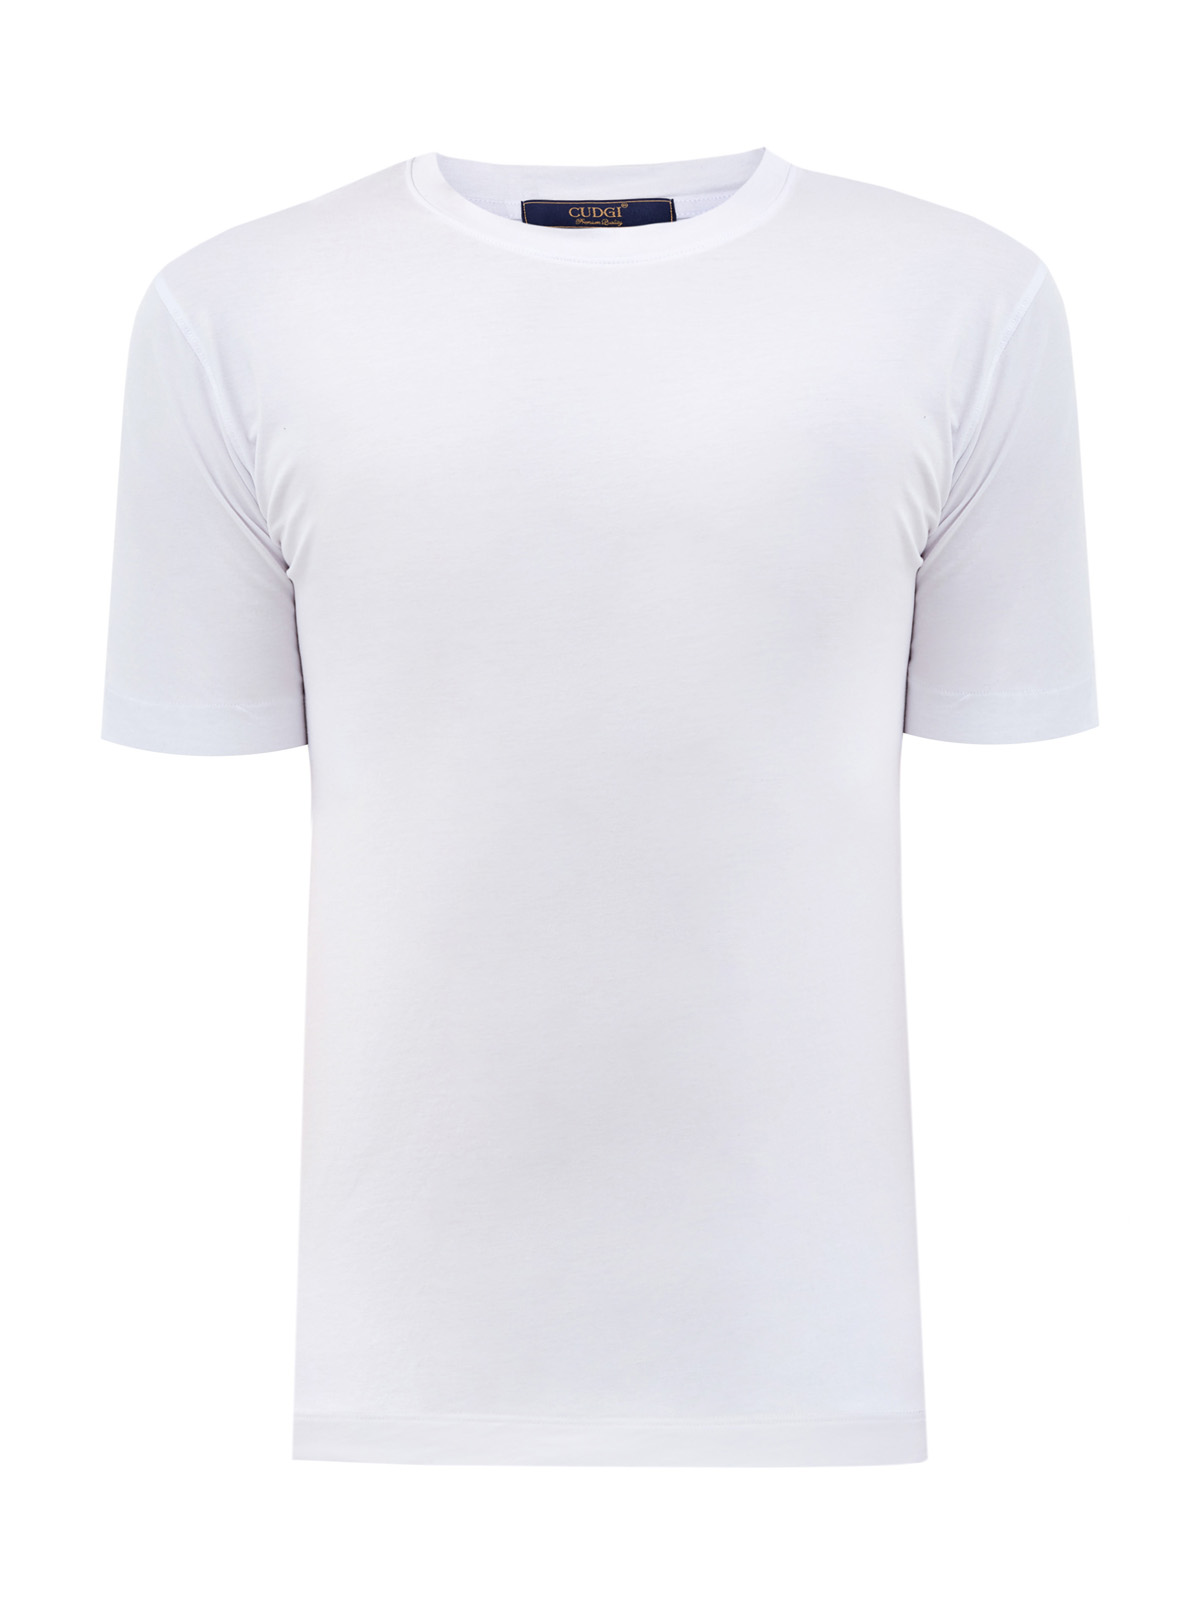 Классическая белая футболка из гладкого джерси CUDGI, цвет белый, размер XL;2XL;3XL;M - фото 1